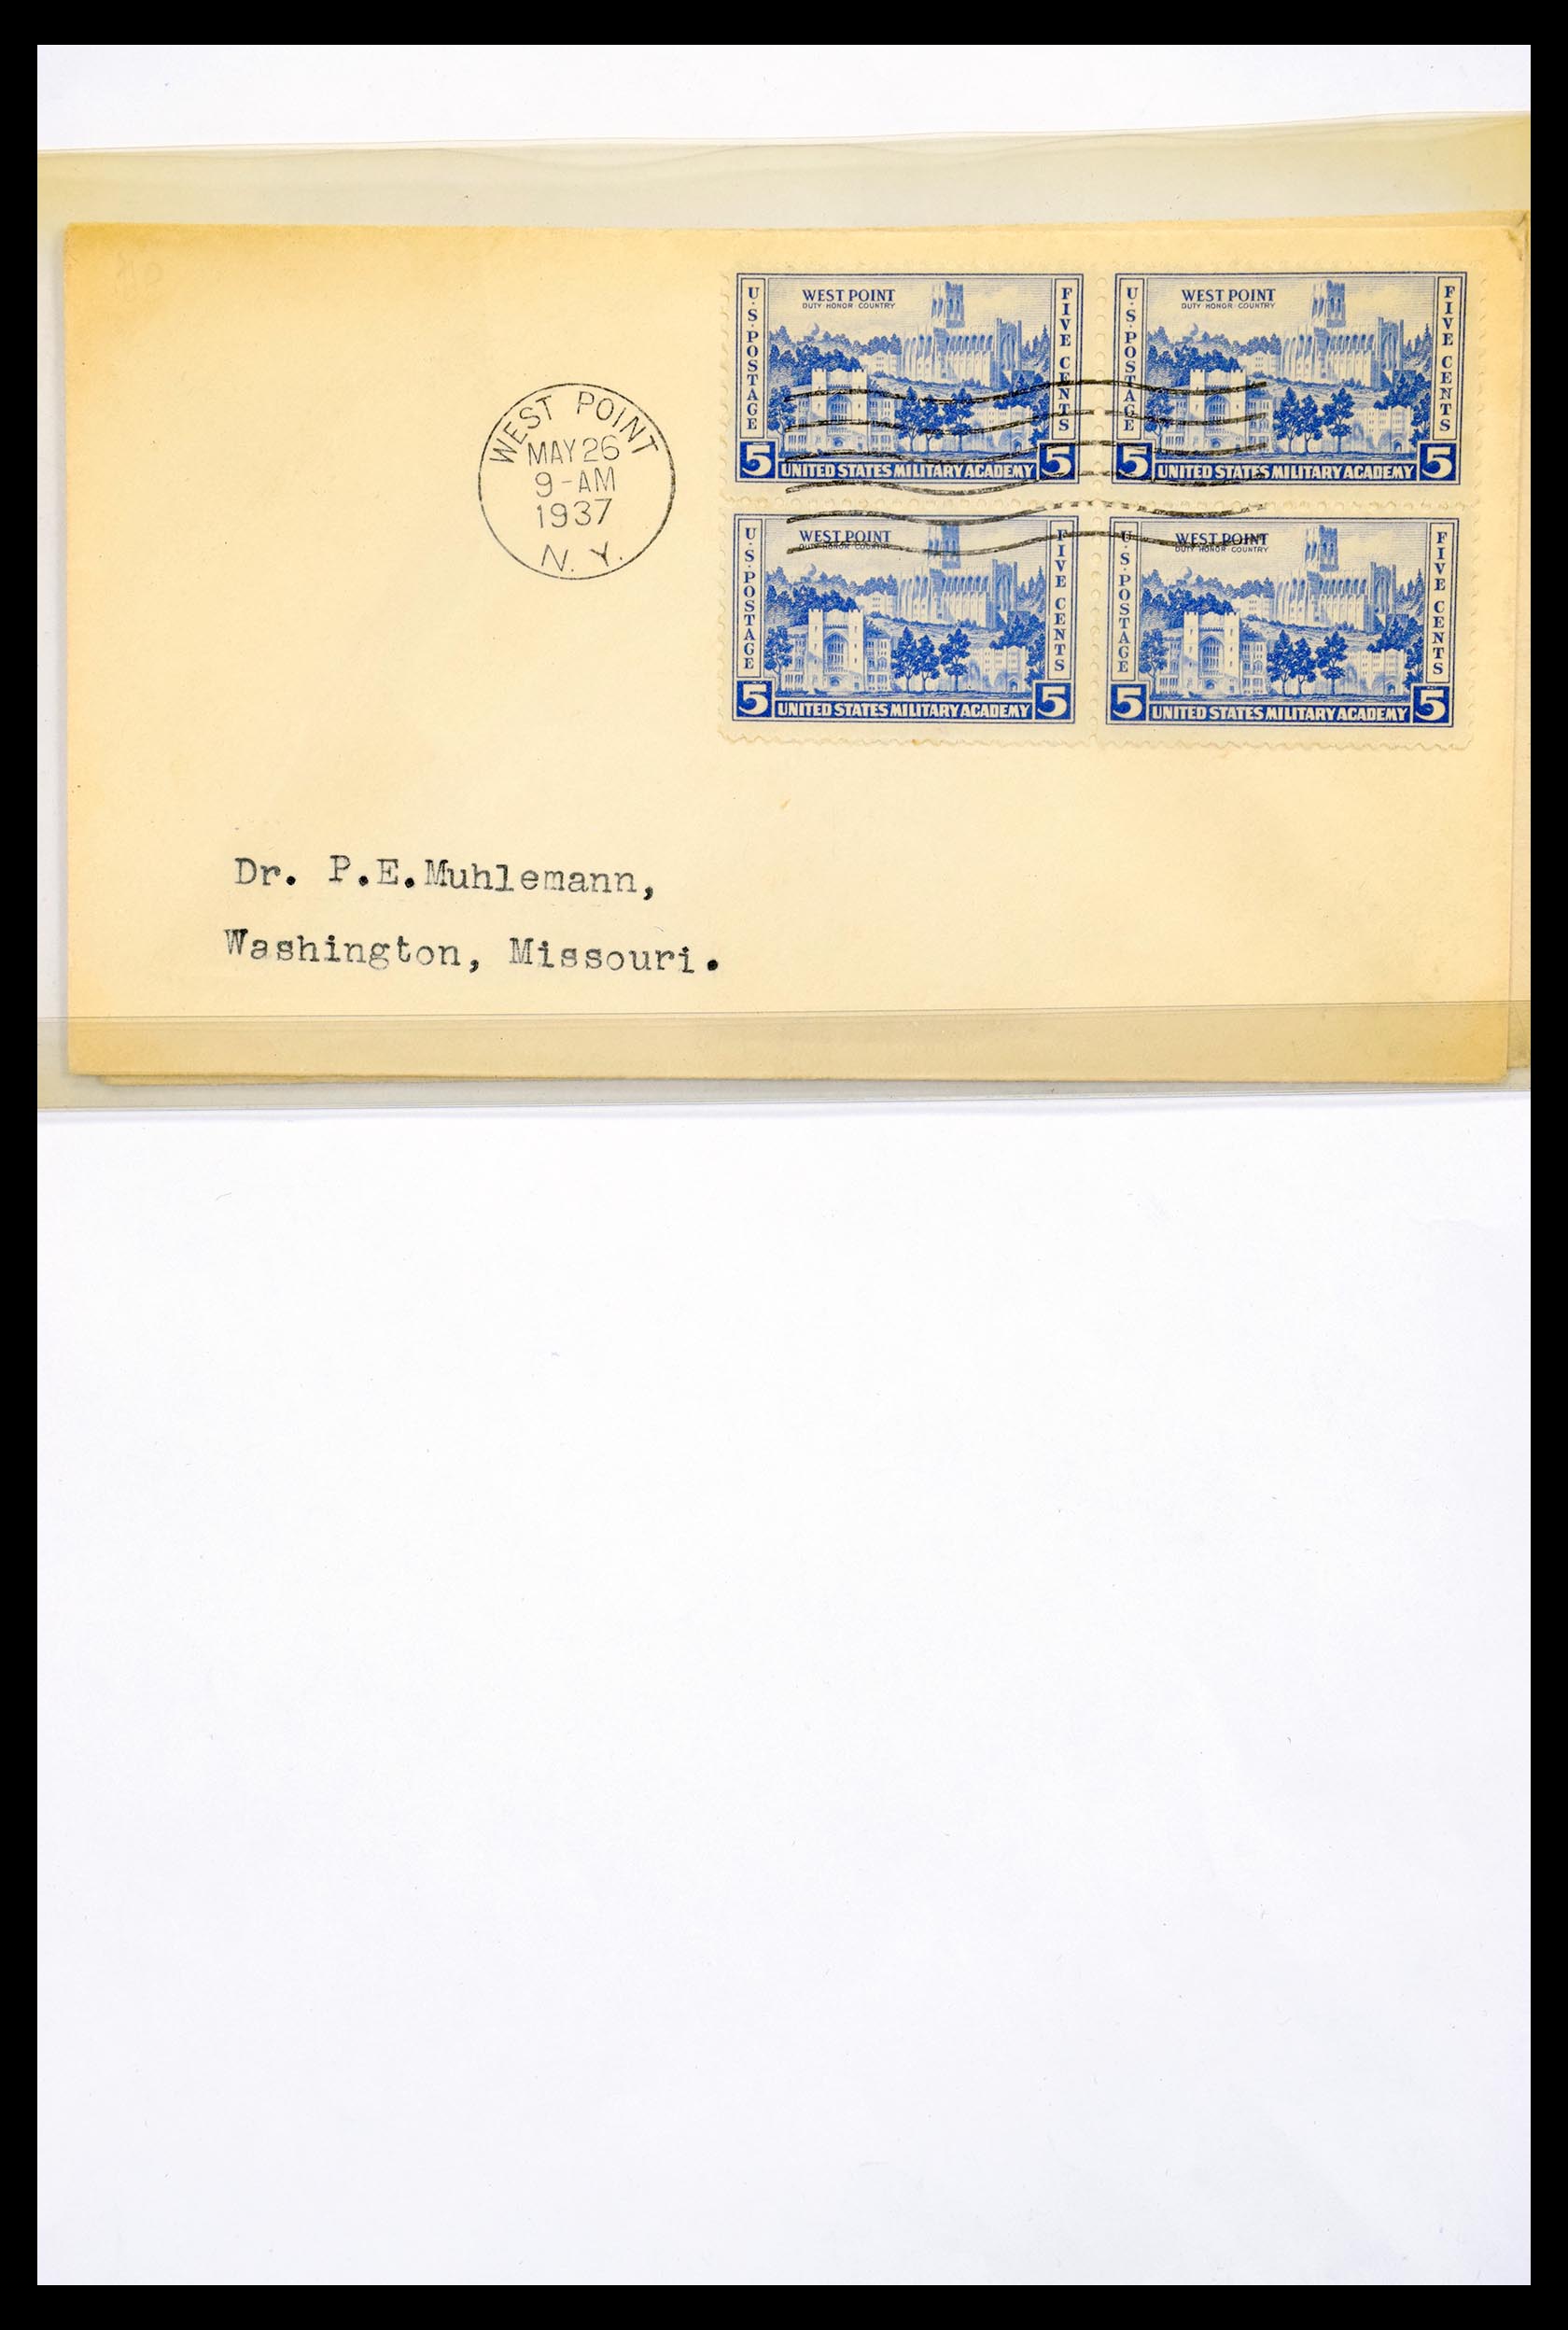 30341 284 - 30341 USA scheepspost brieven 1930-1970.